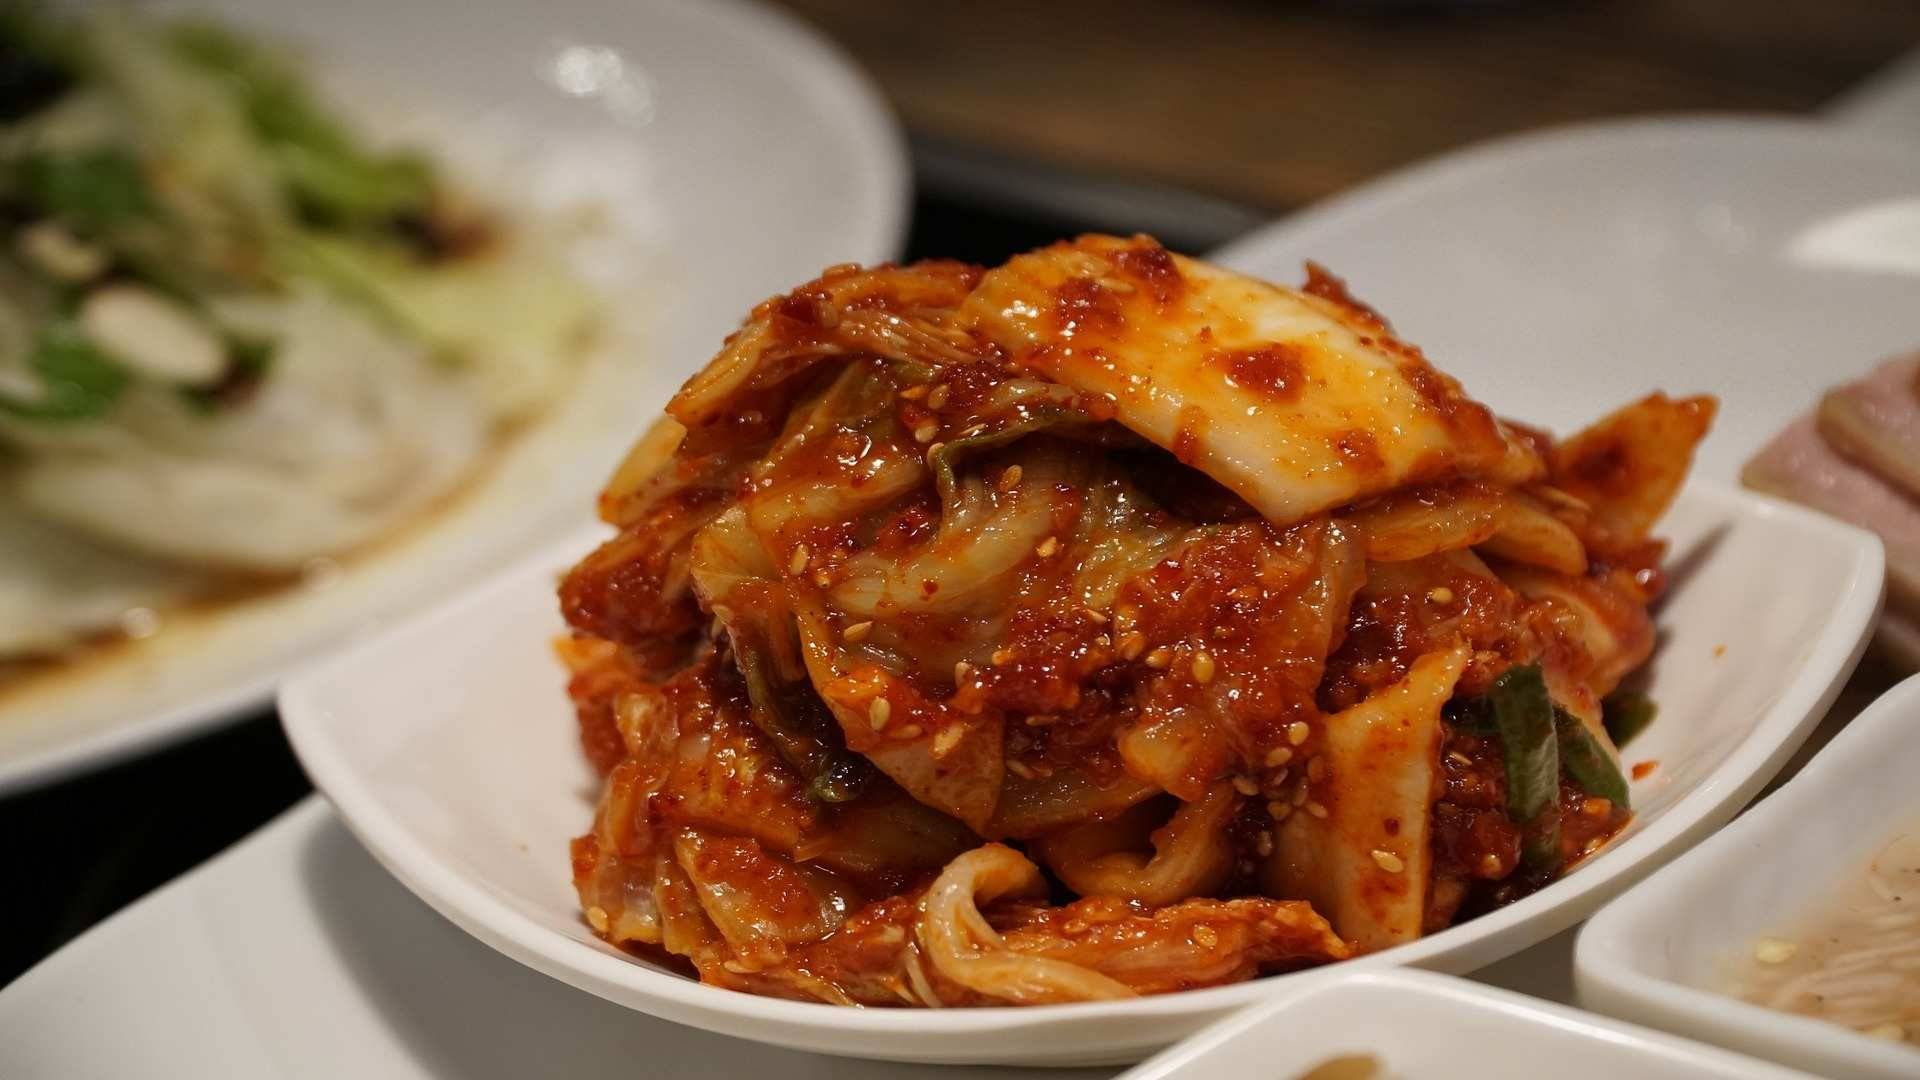 El Kimchi casero mantiene mejor los efectos probióticos de la fermentación que el Kimchi enlatado.